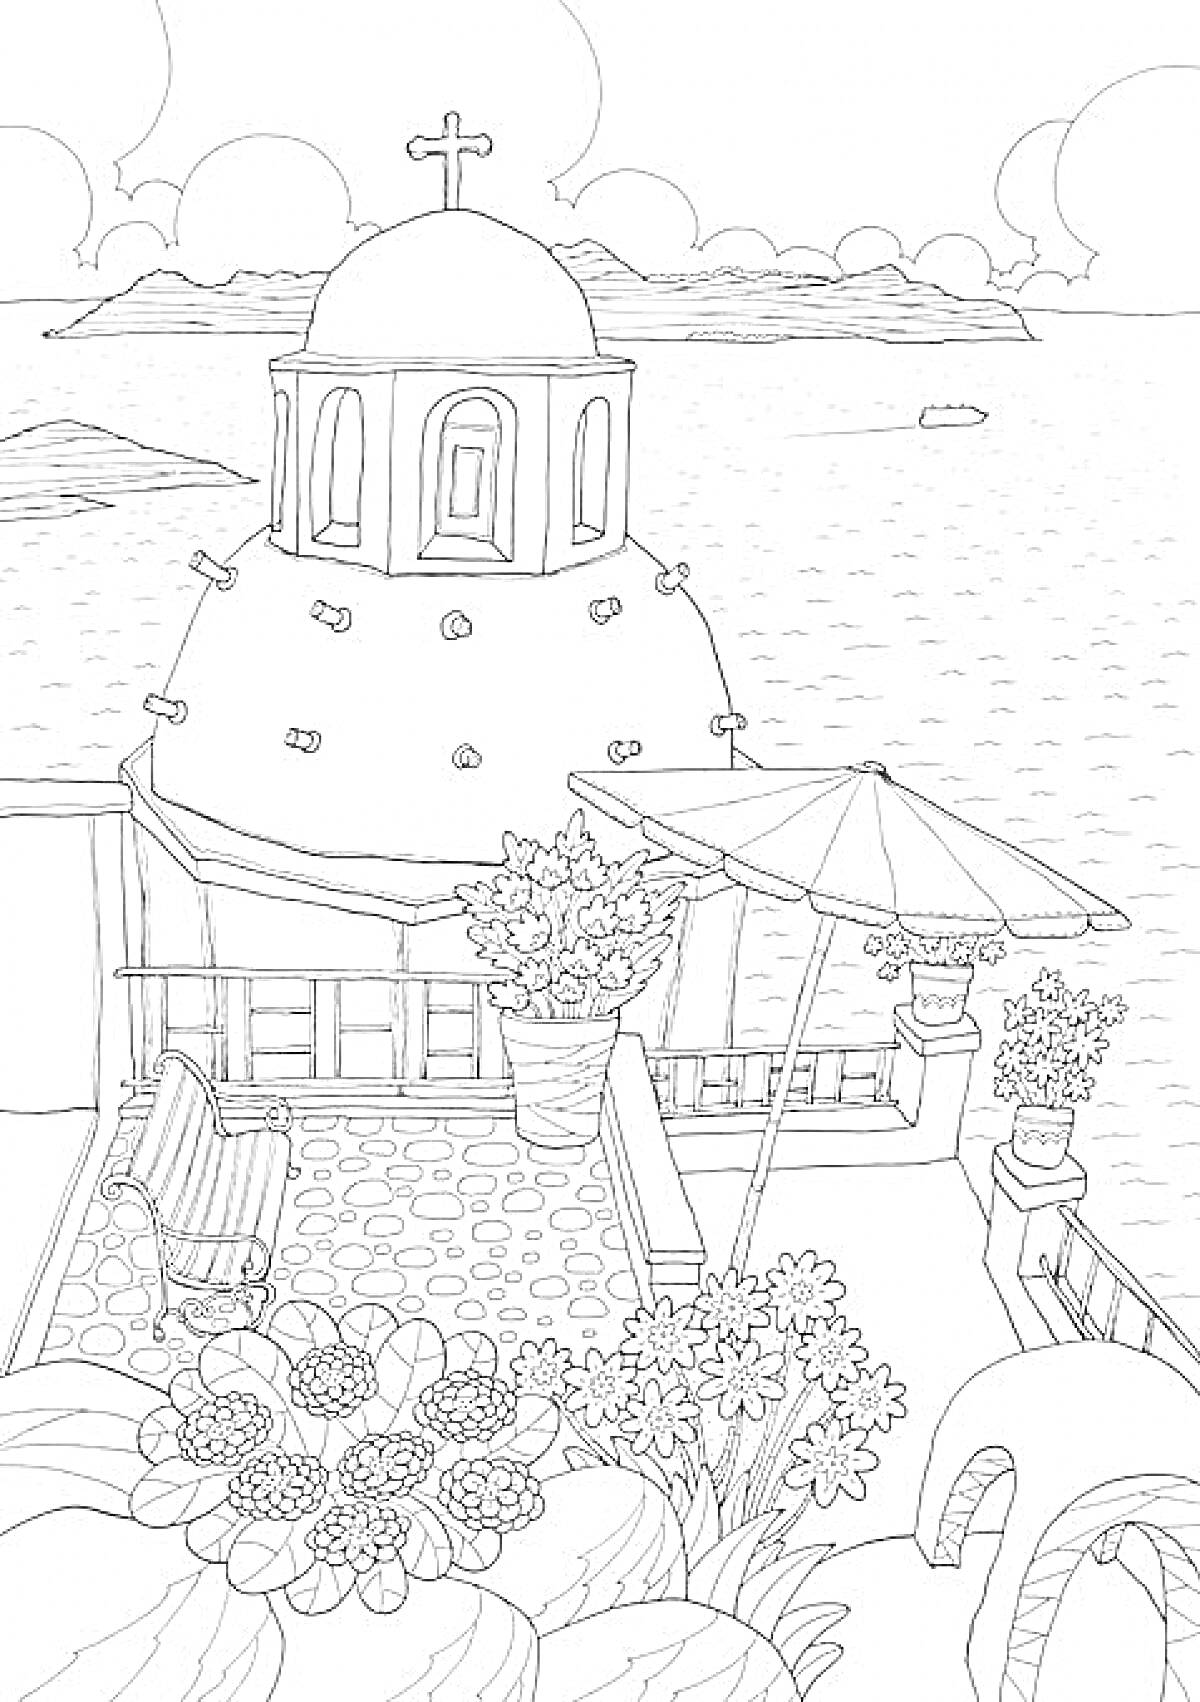 Виды с террасы на побережье: купол с крестом, море, лодка, цветы в горшках, зонтик, скамейка, арочные элементы, облака на небе.